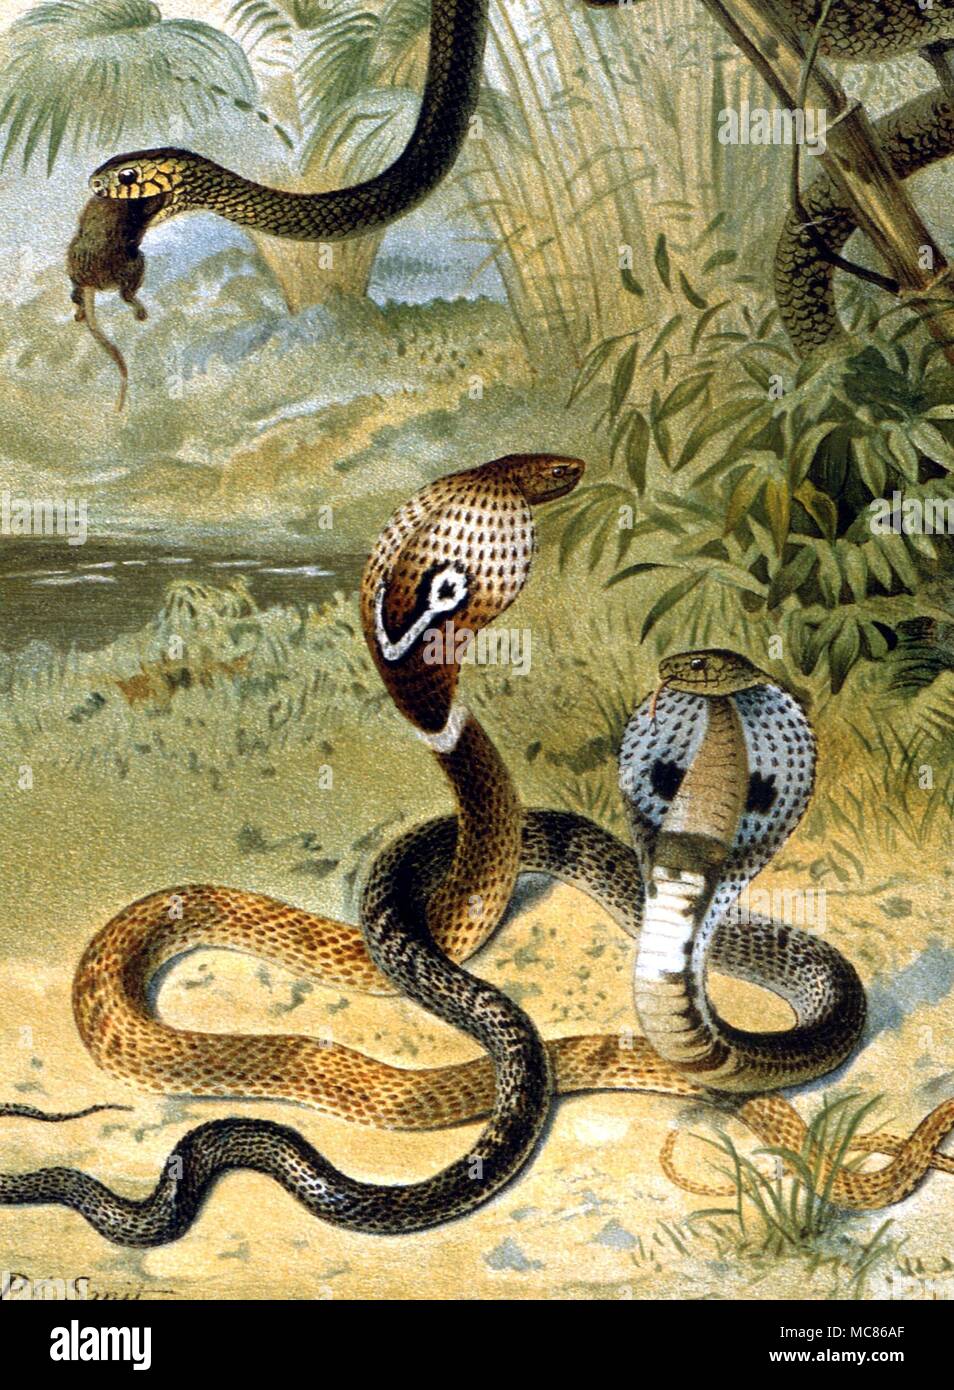 Schlangen Kobras und eine Ratte - Schlange. Chromolithograph von Smit aus der Edition 1896 von P L Scalter's 'The Royal Natural History' Stockfoto